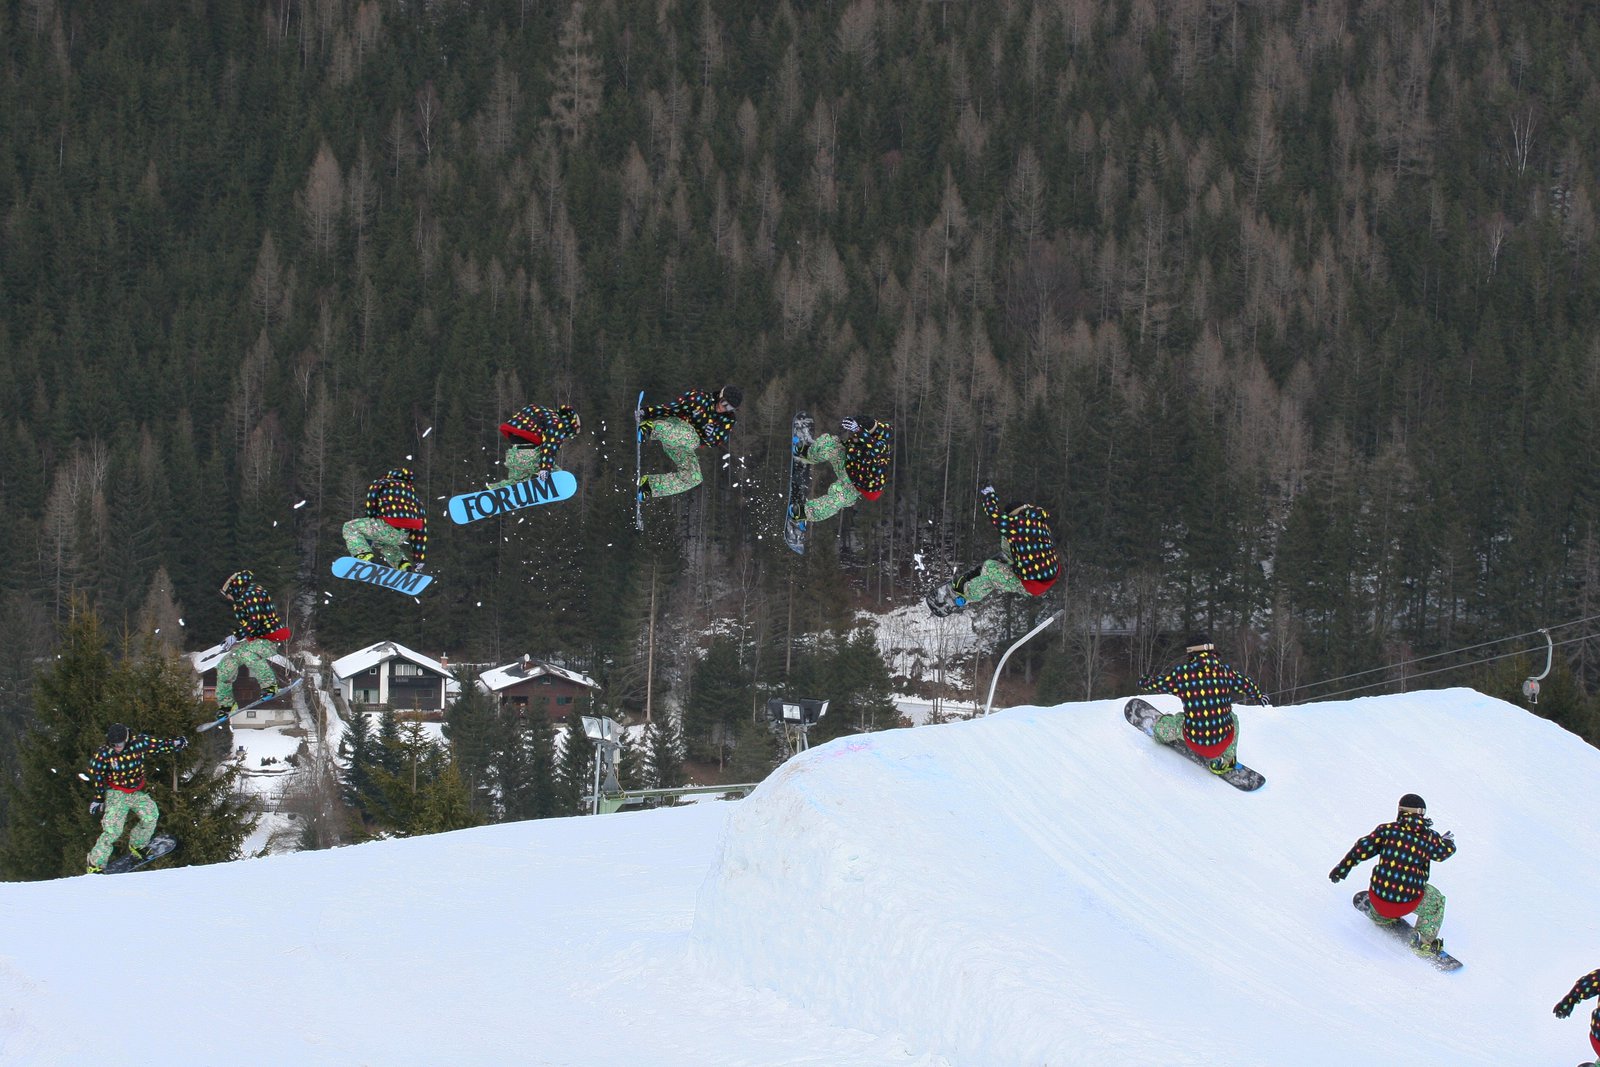 Snowboard fs 7